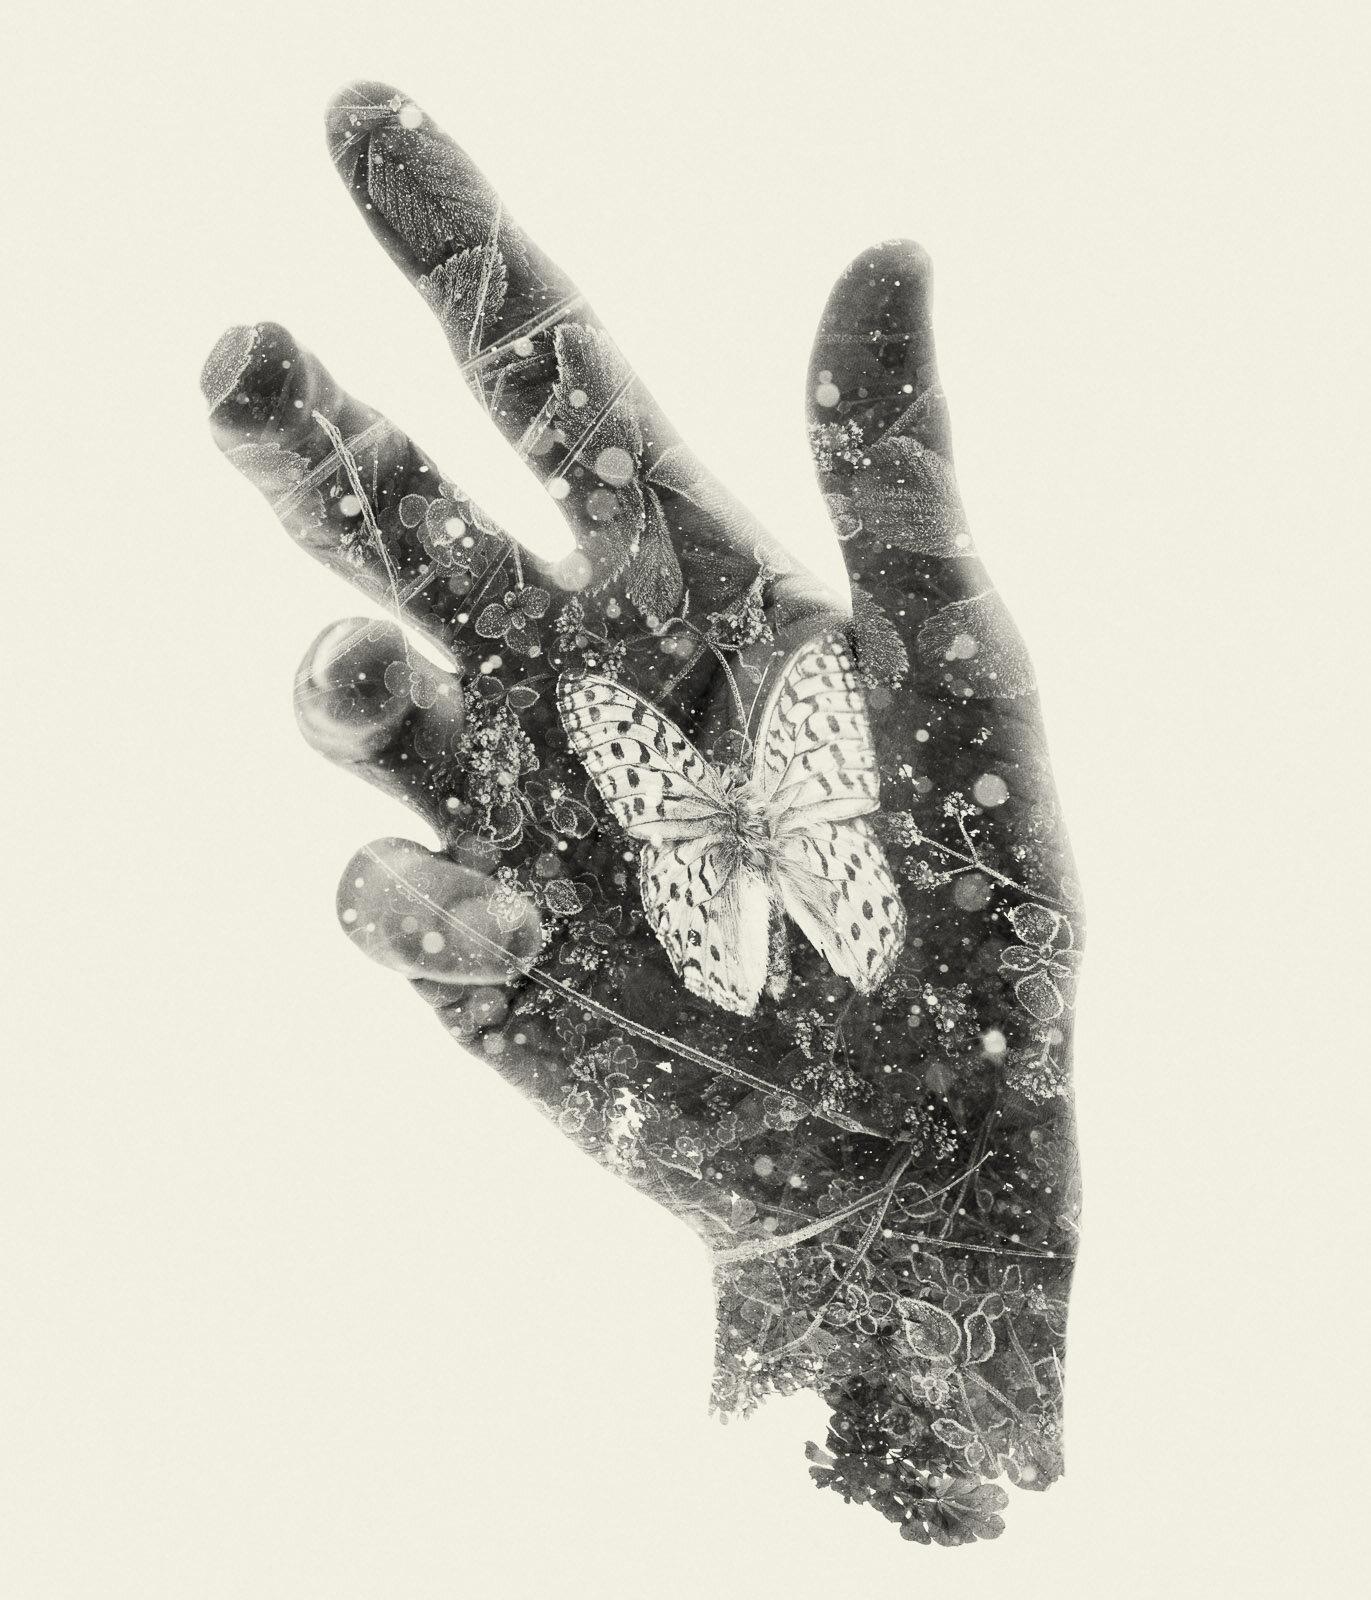 Landscape Photograph Christoffer Relander - Papillon assis - photographie multi-expositions de la main et de la nature en noir et blanc